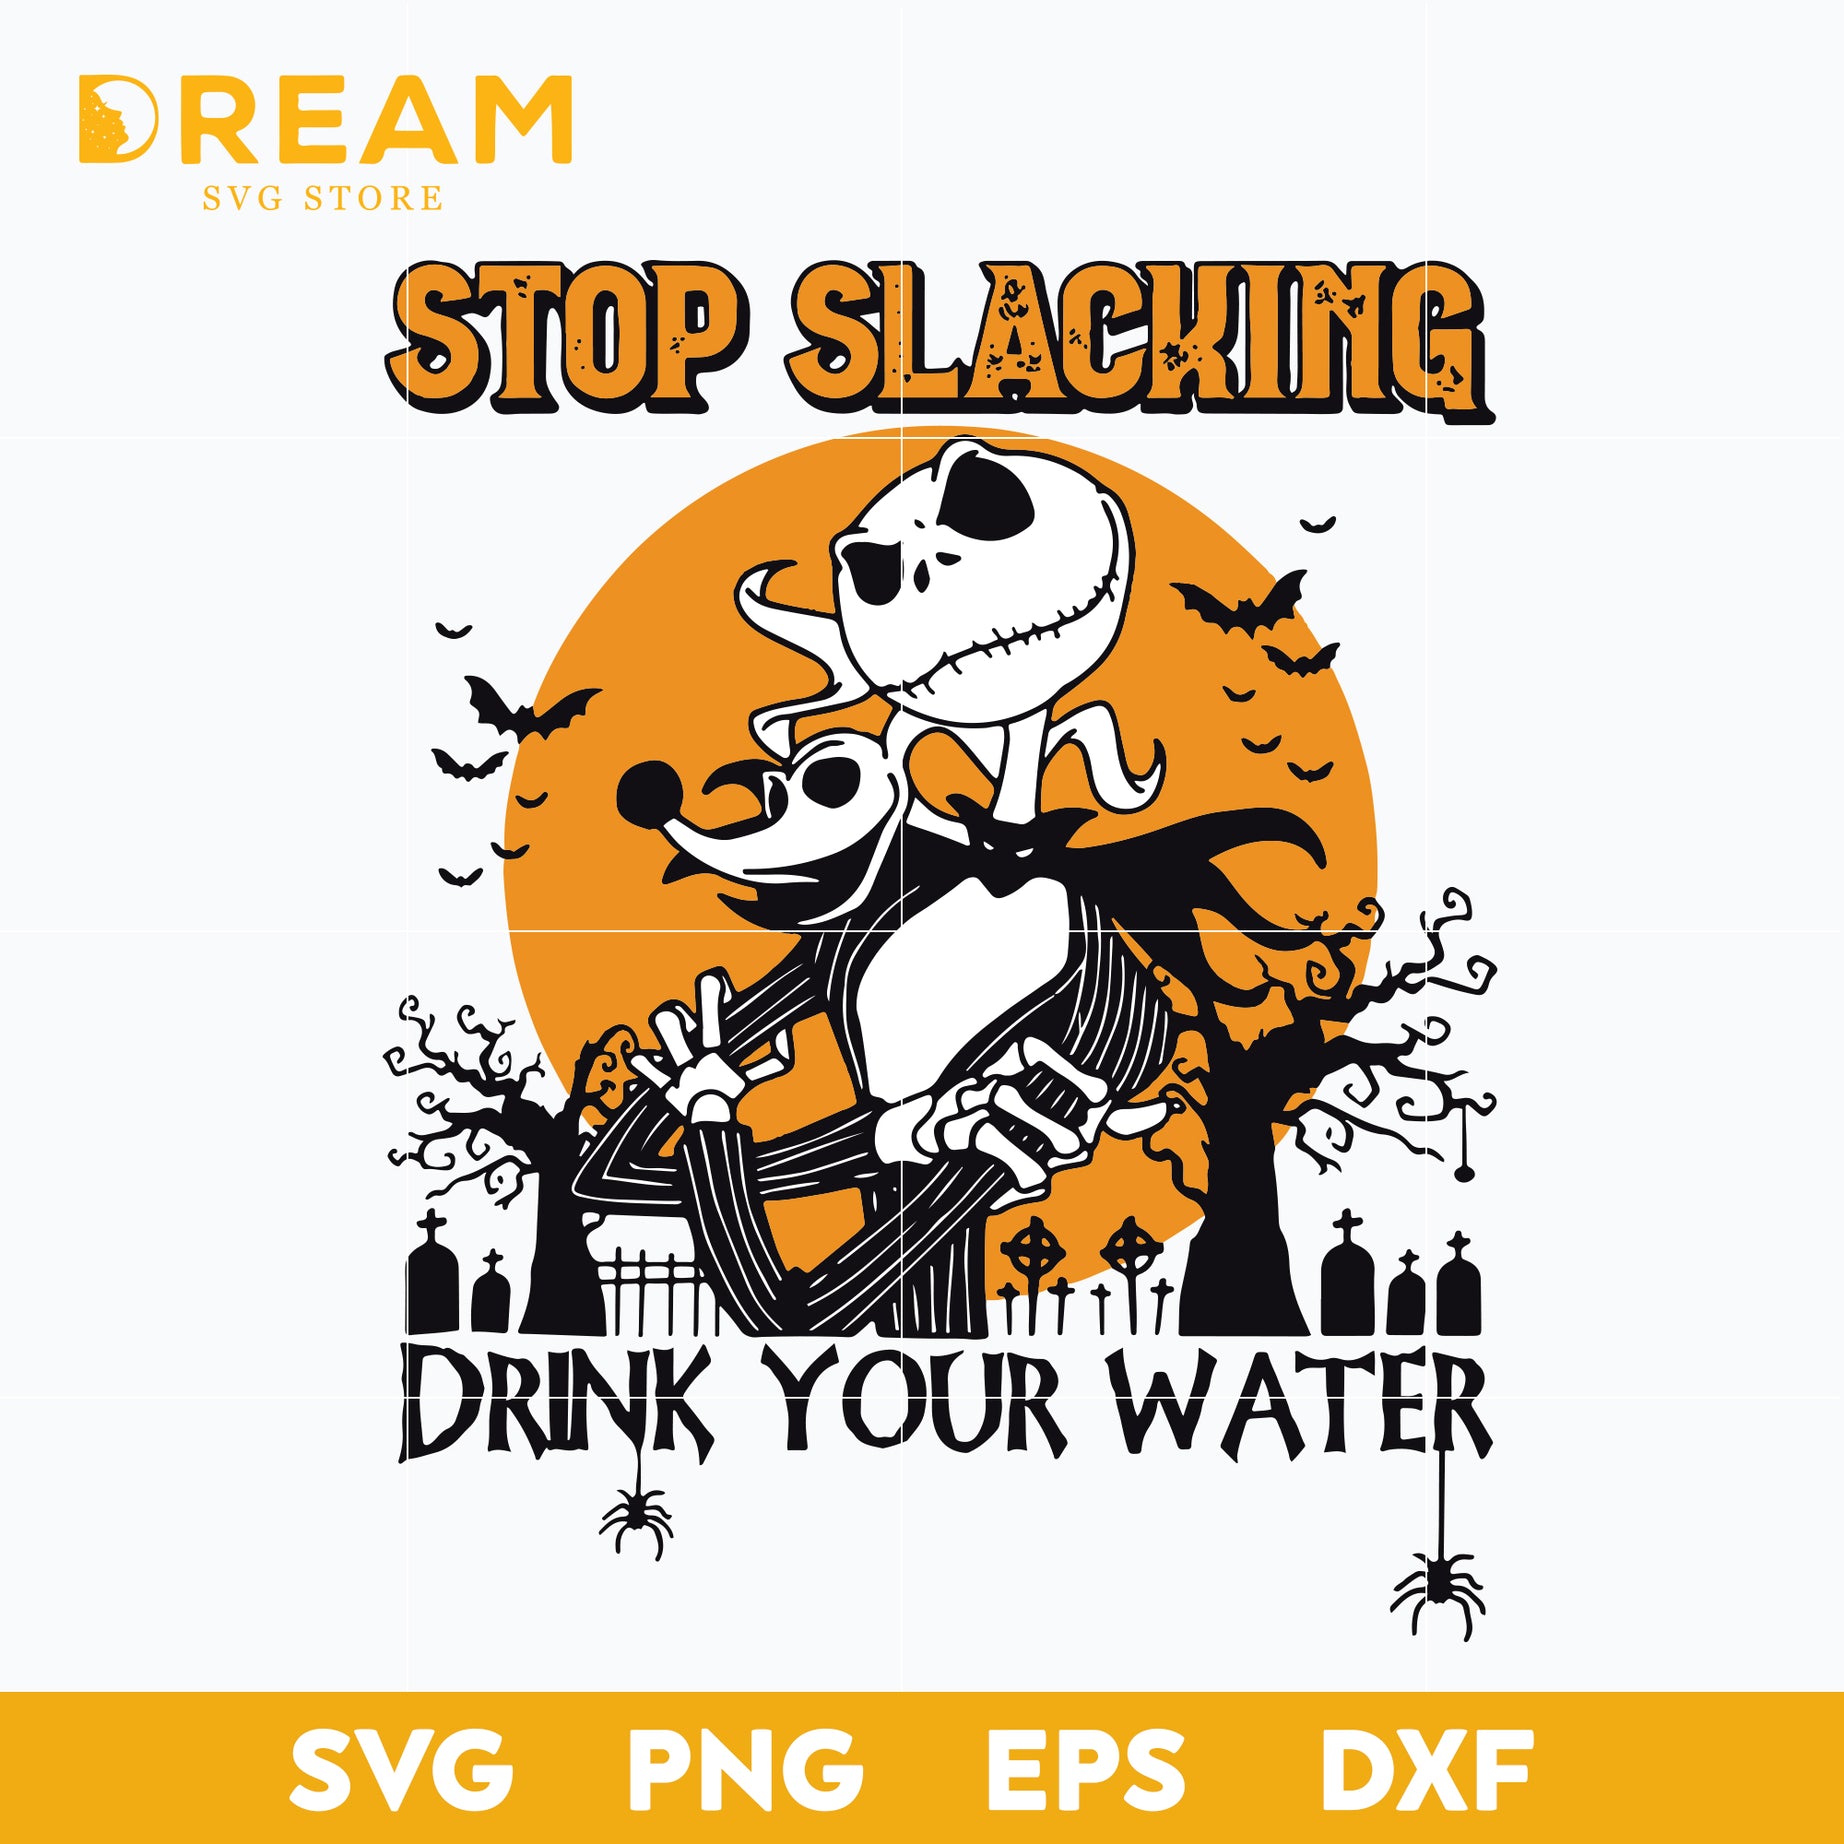 Stop slacking drink your water svg, skellington svg, halloween svg, png, dxf, eps digital file HLW1709209L